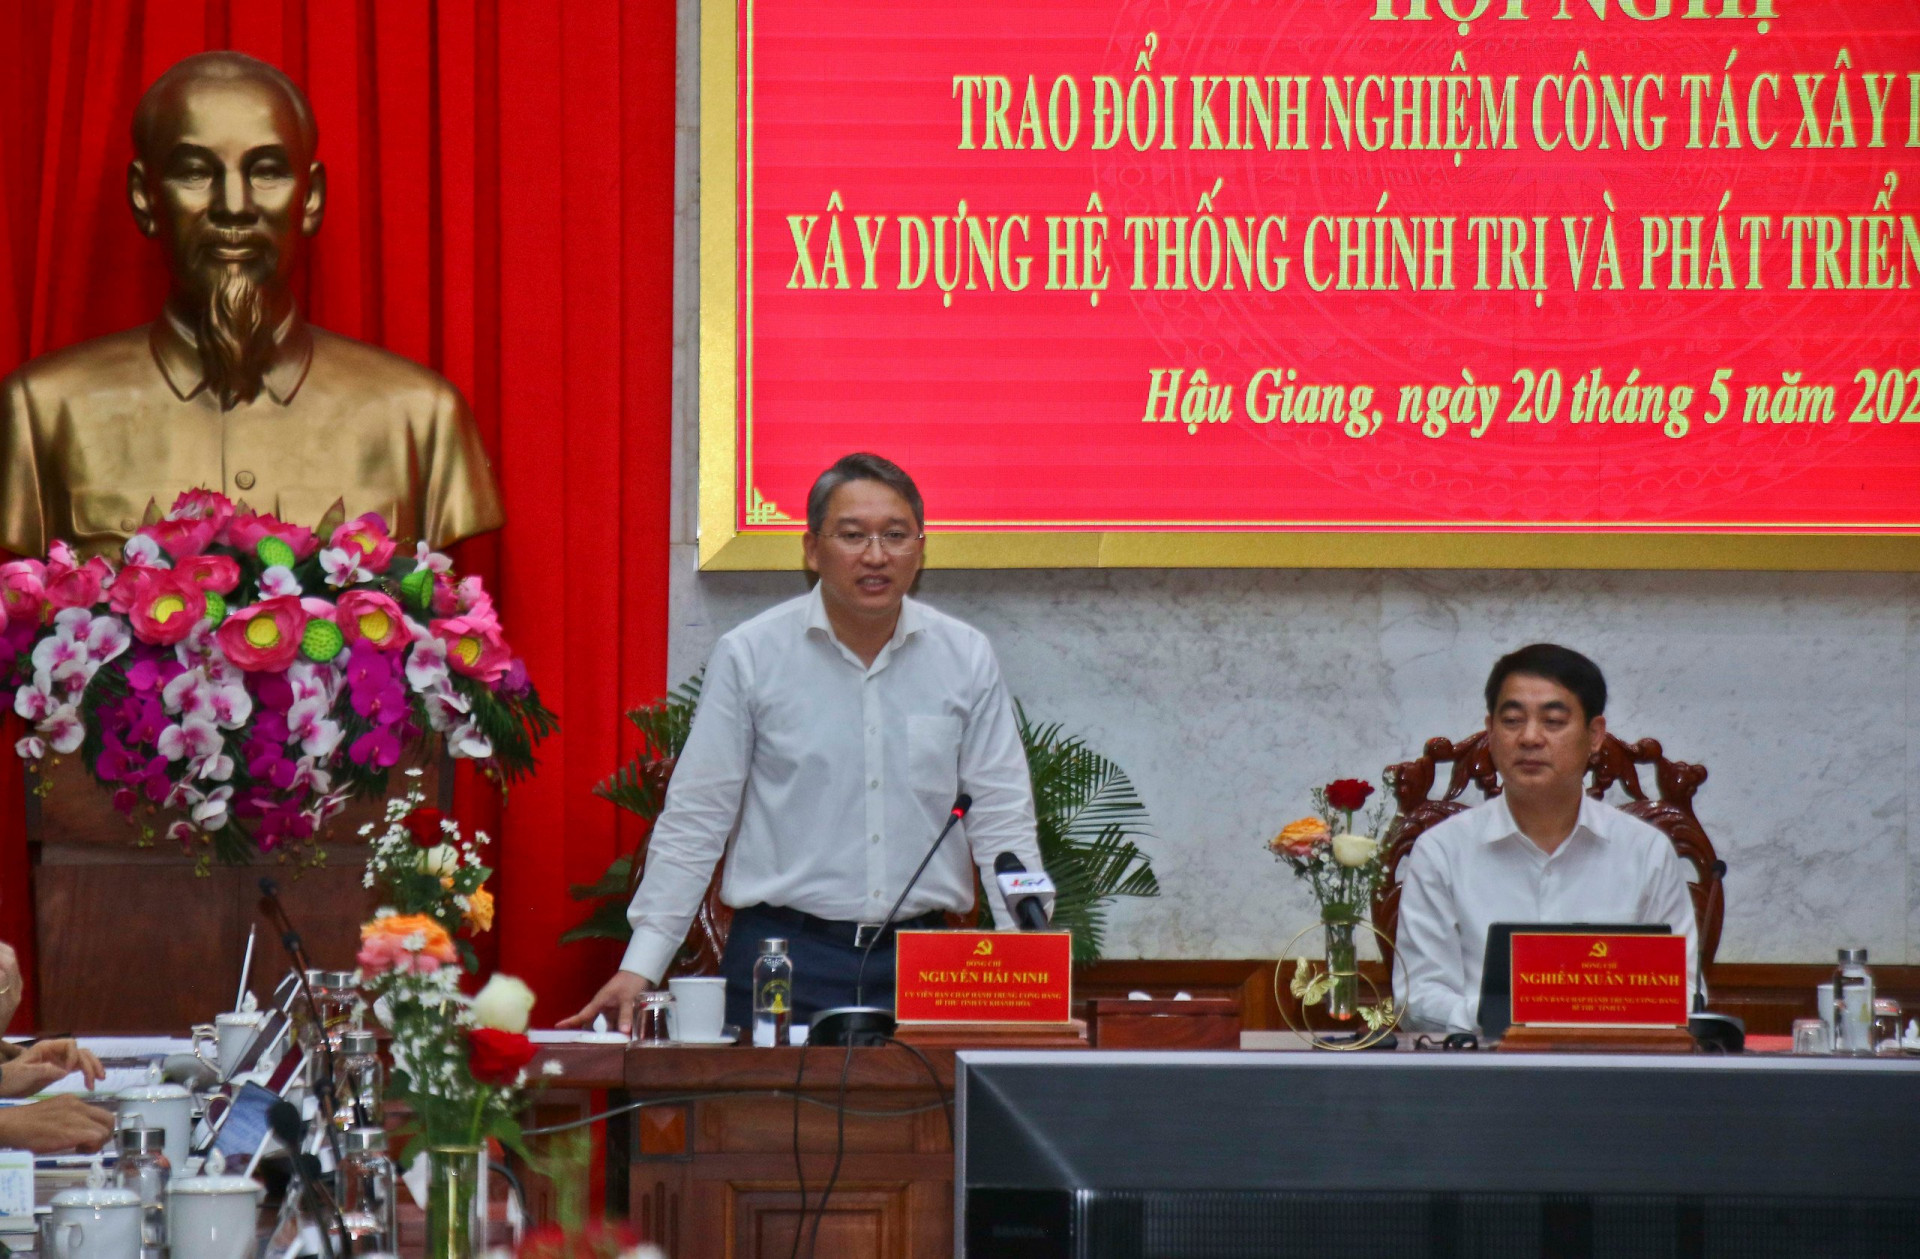 Ông Nguyễn Hải Ninh phát biểu tại buổi làm việc.

